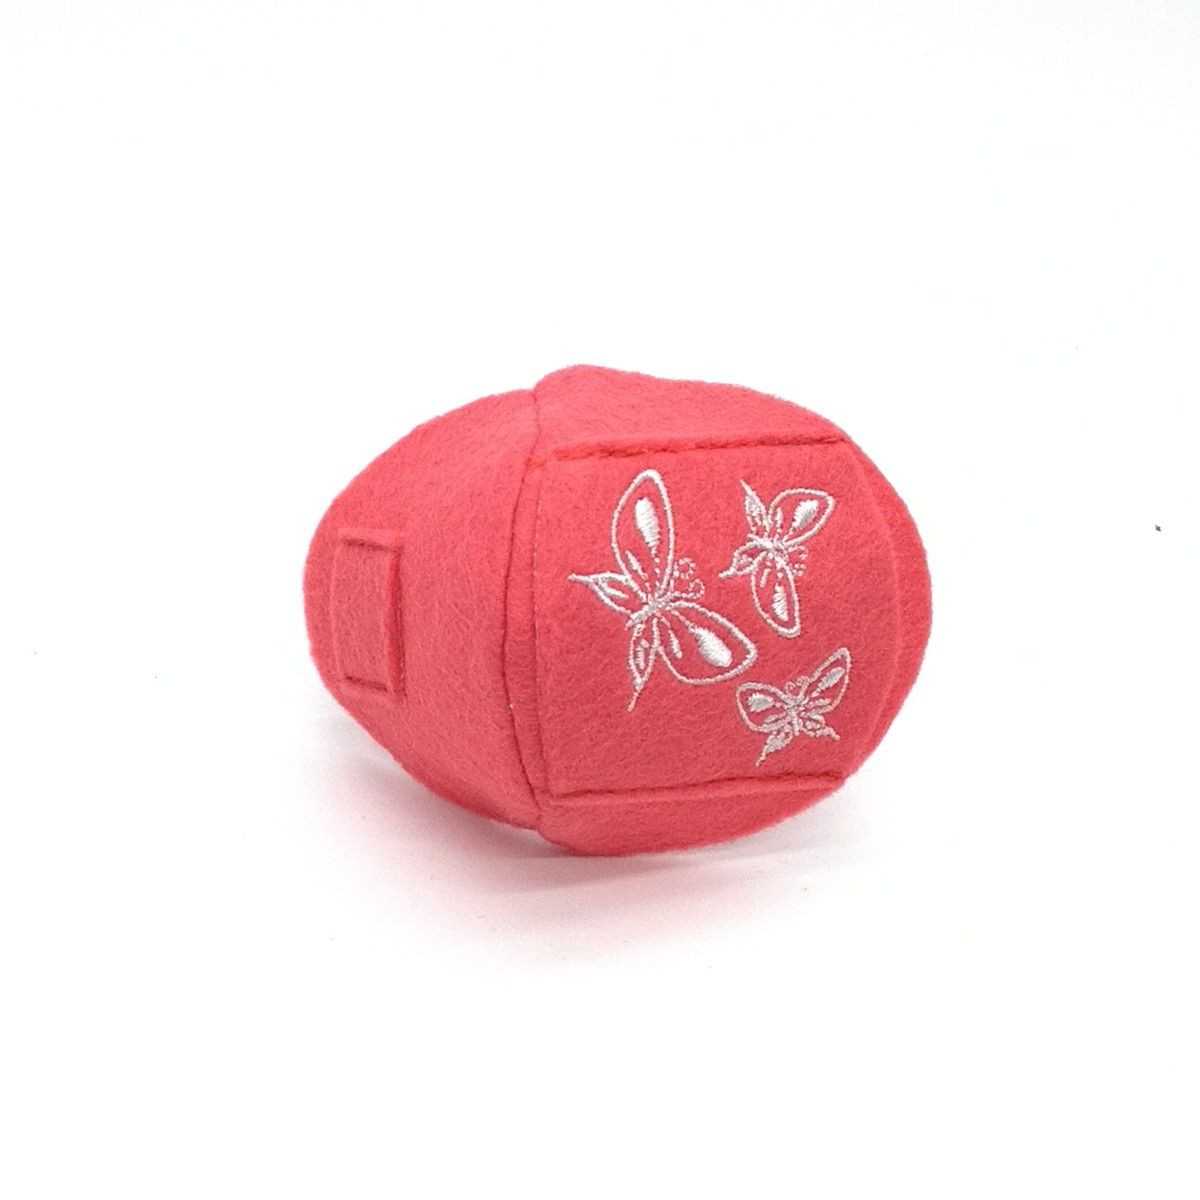 Okluzor textilný nasúvací - ružový motýliky obojstranný - 1